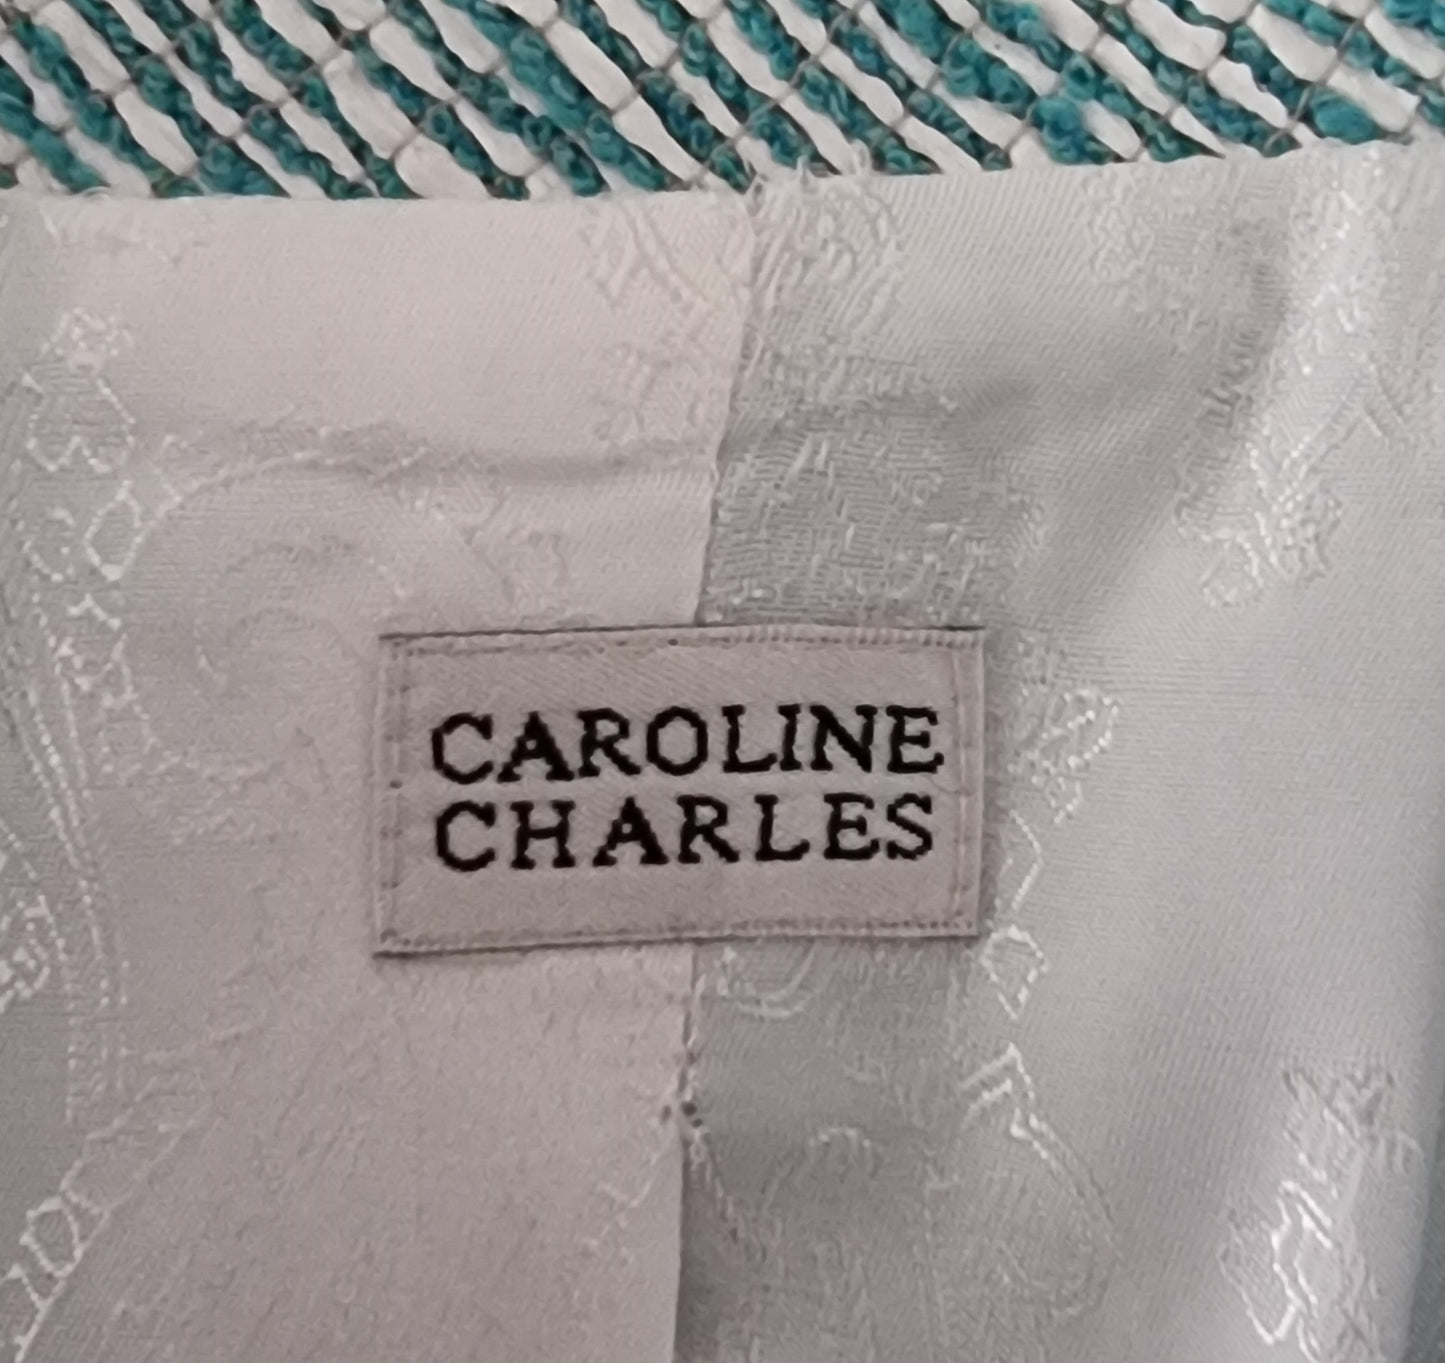 Caroline Charles London Vintage Turquoise & White Suit UK 18 US 14 EU 46 IT 50 Timeless Fashions